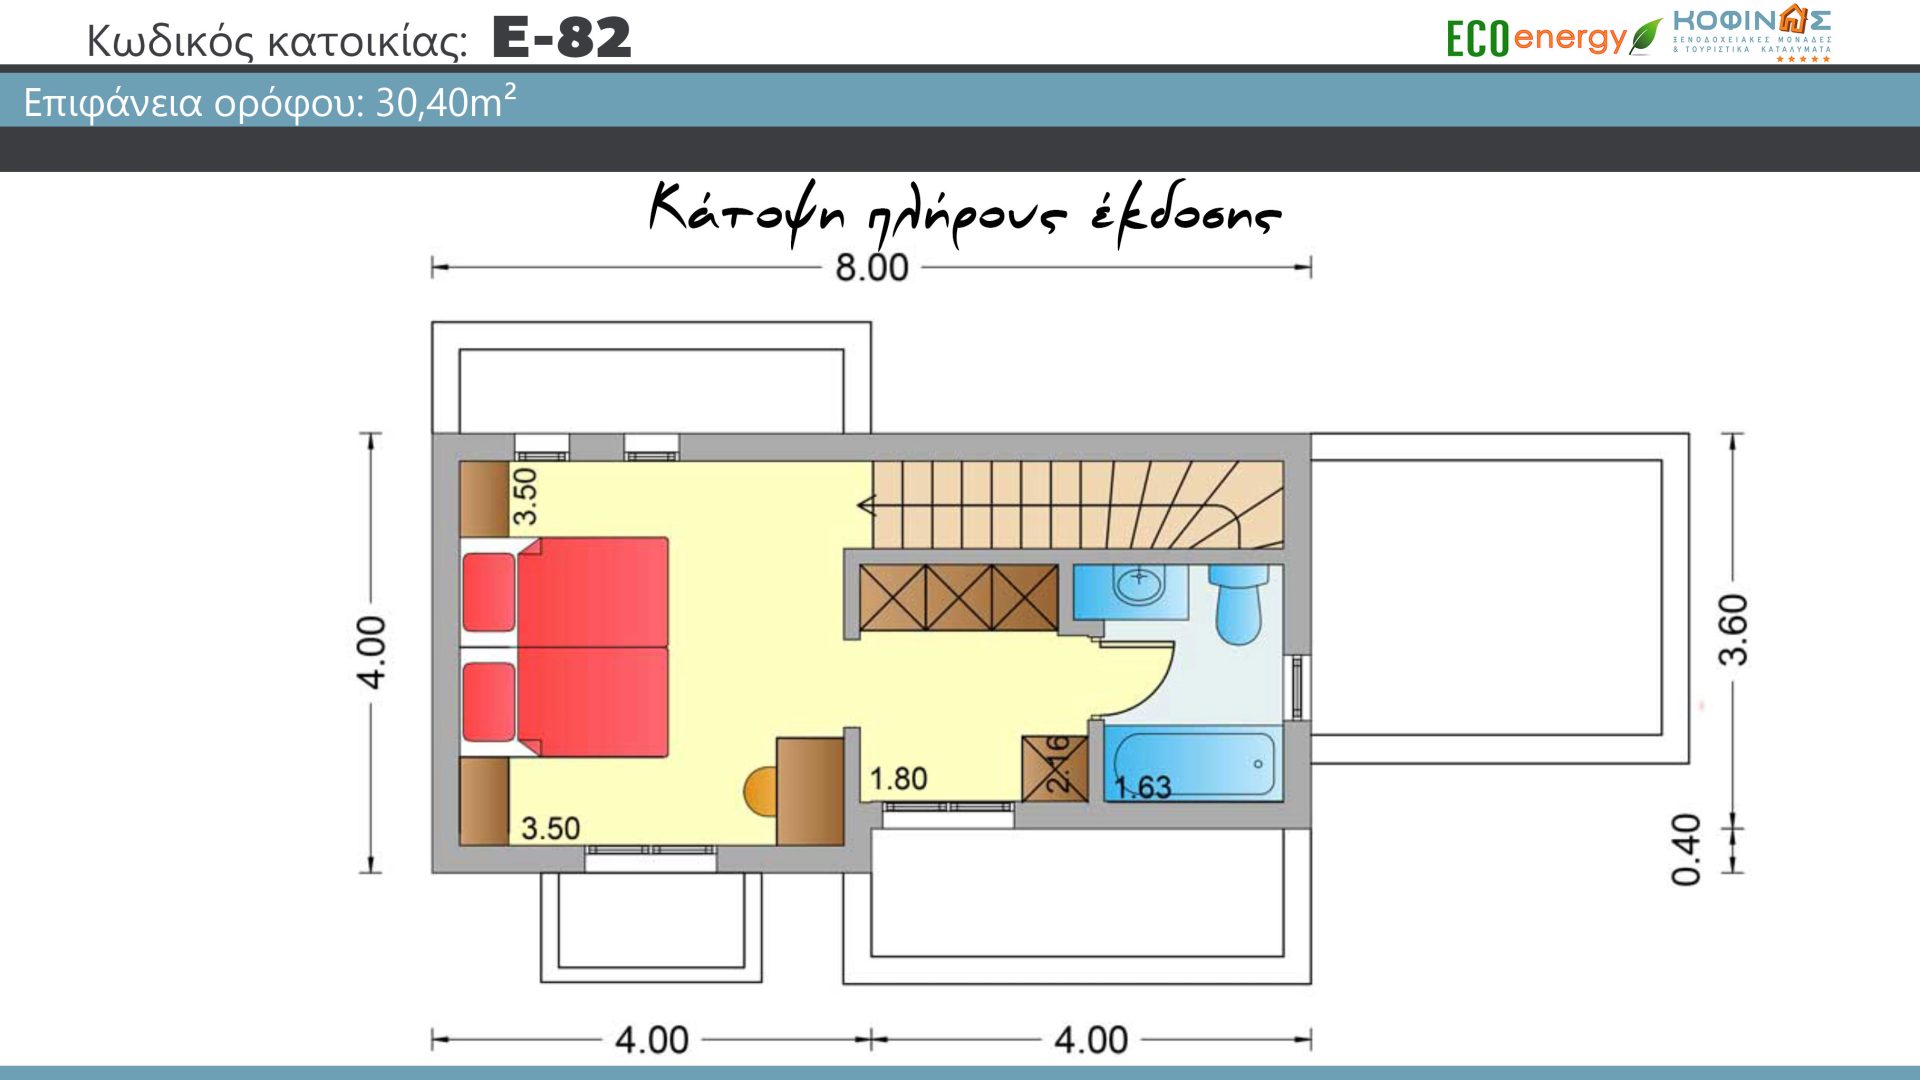 Διώροφη Κατοικία E-82, συνολικής επιφάνειας 82,30 τ.μ., στεγασμένοι χώροι 2.00 m²